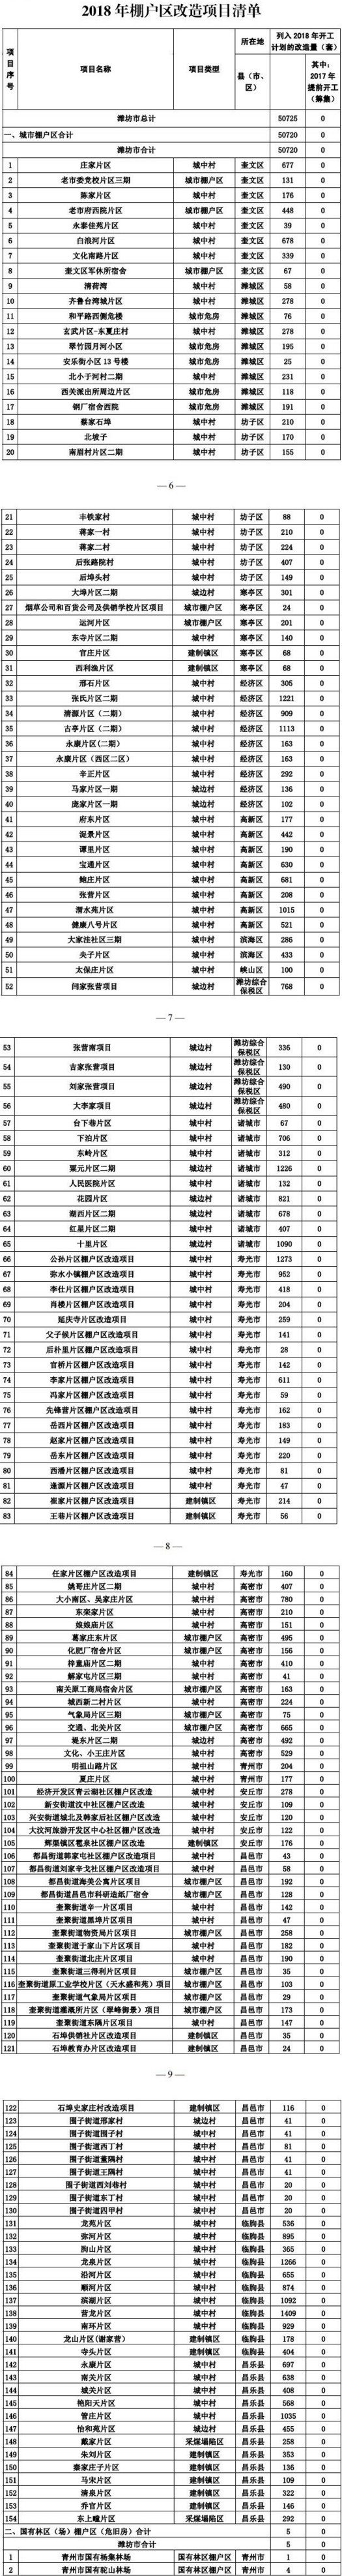 潍坊市2018年棚户区改造名单.jpg